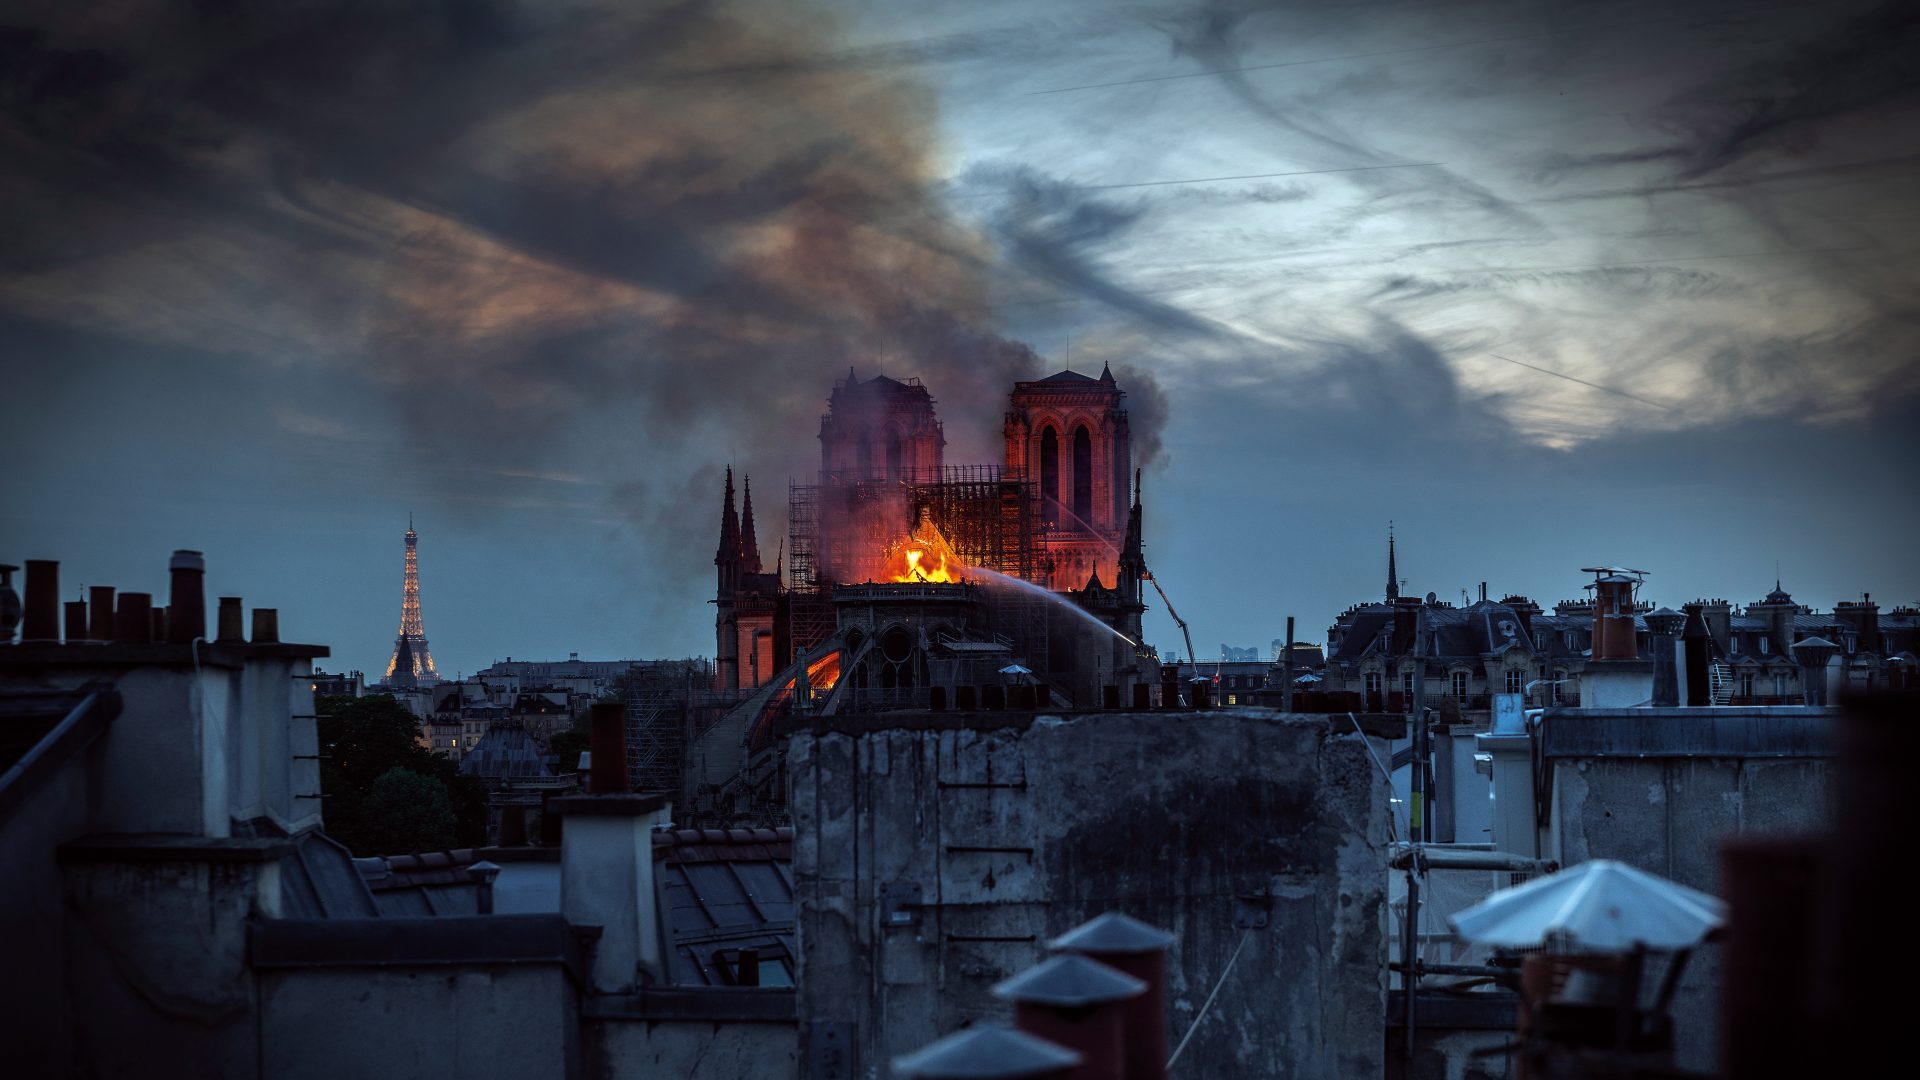 The catastrophic blaze at Notre-Dame 
Cathedral in Paris on April 15, 2019. Photo: Veronique de Viguerie/Getty Images